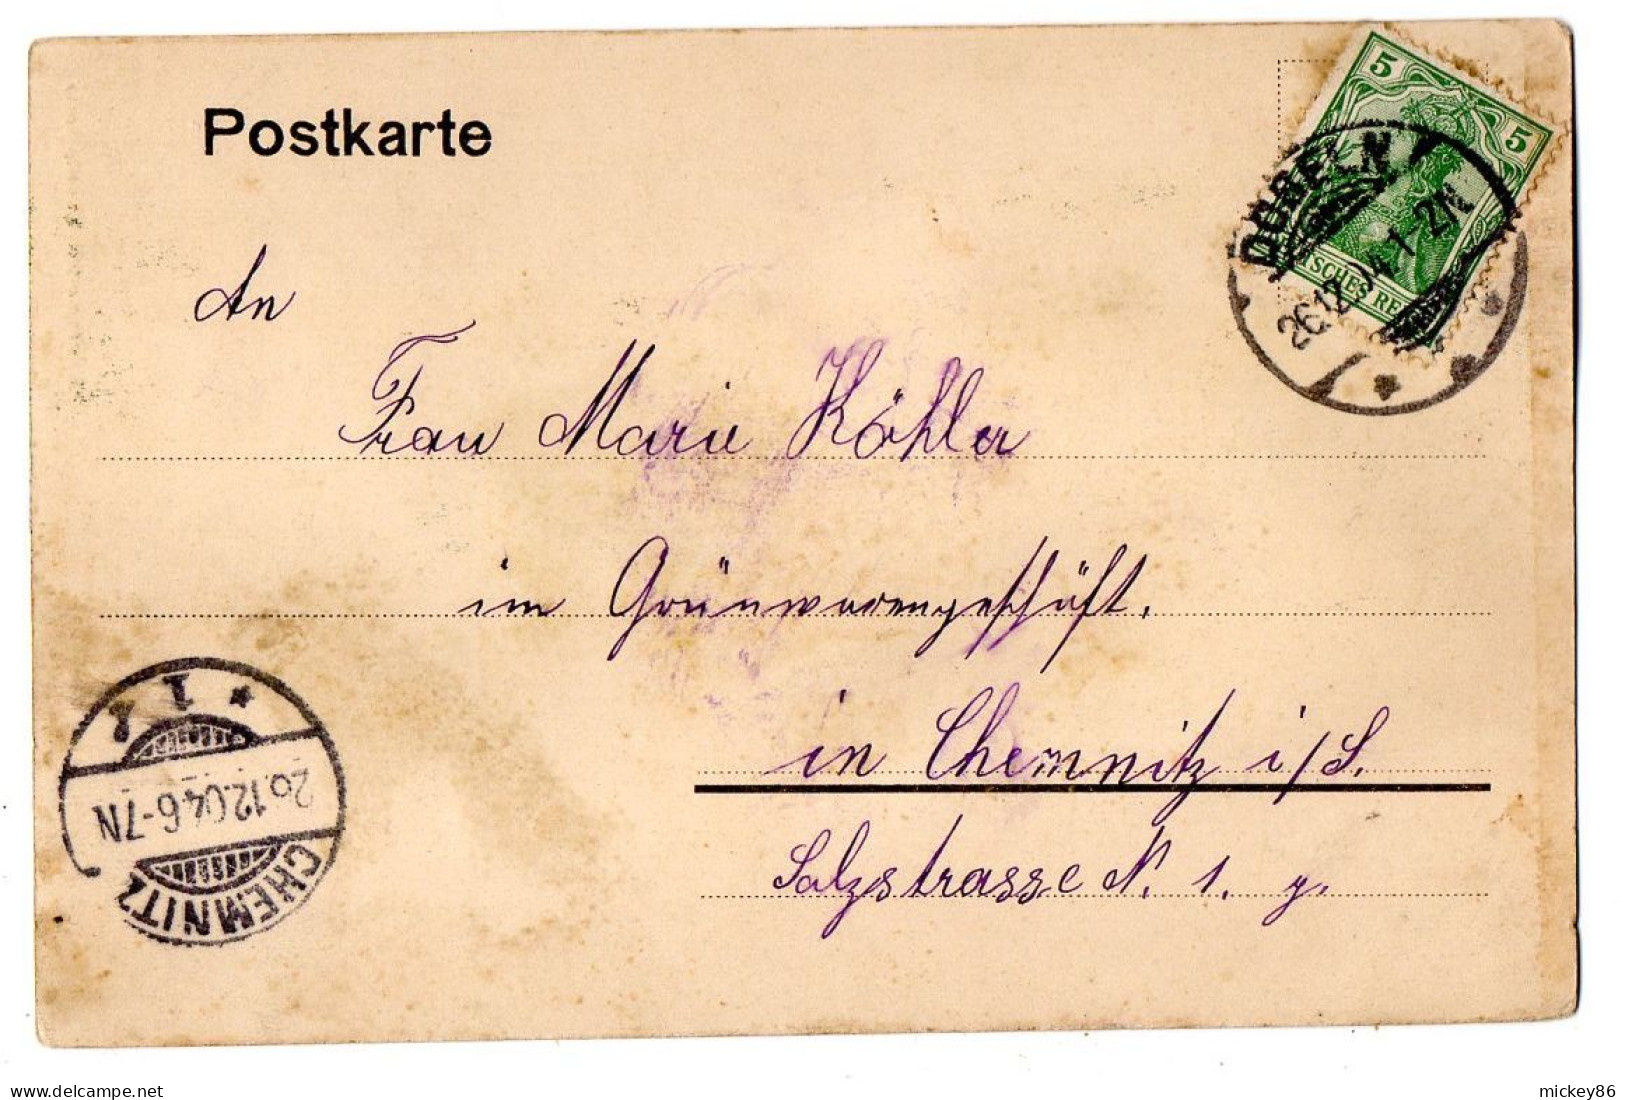 Allemagne  --DOEBELN  -1904 -- Kirche  ...carte Précurseur Colorisée....timbre...cachet - Döbeln